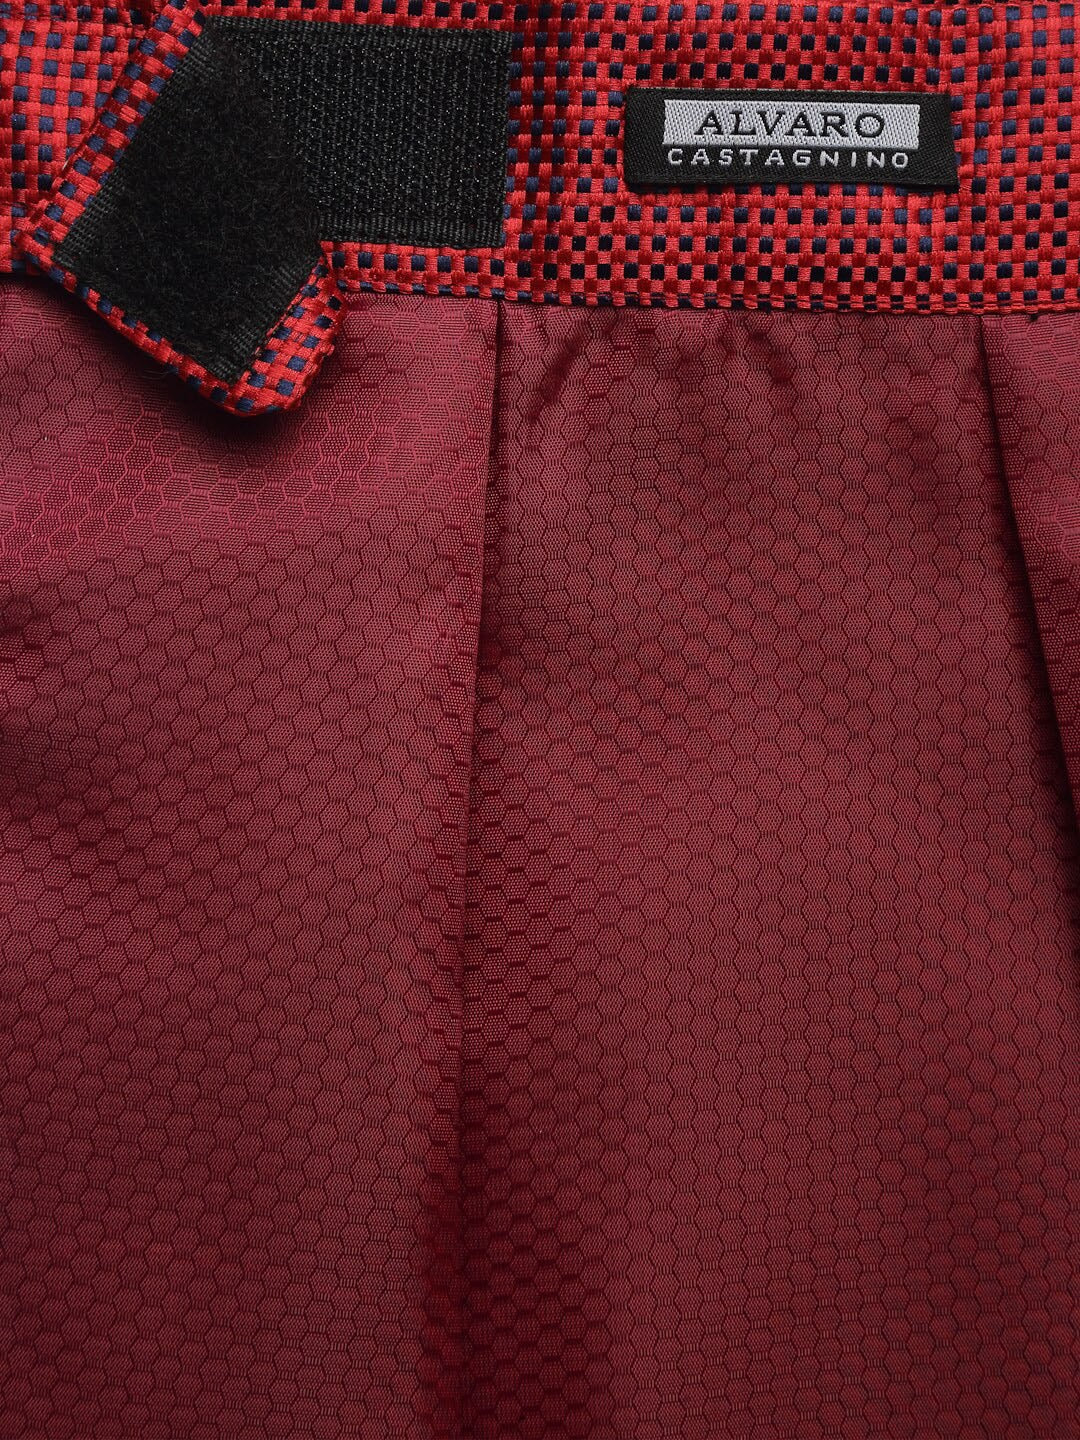 Alvaro Castagnino Men's Red::Black Color Woven Design Cravat